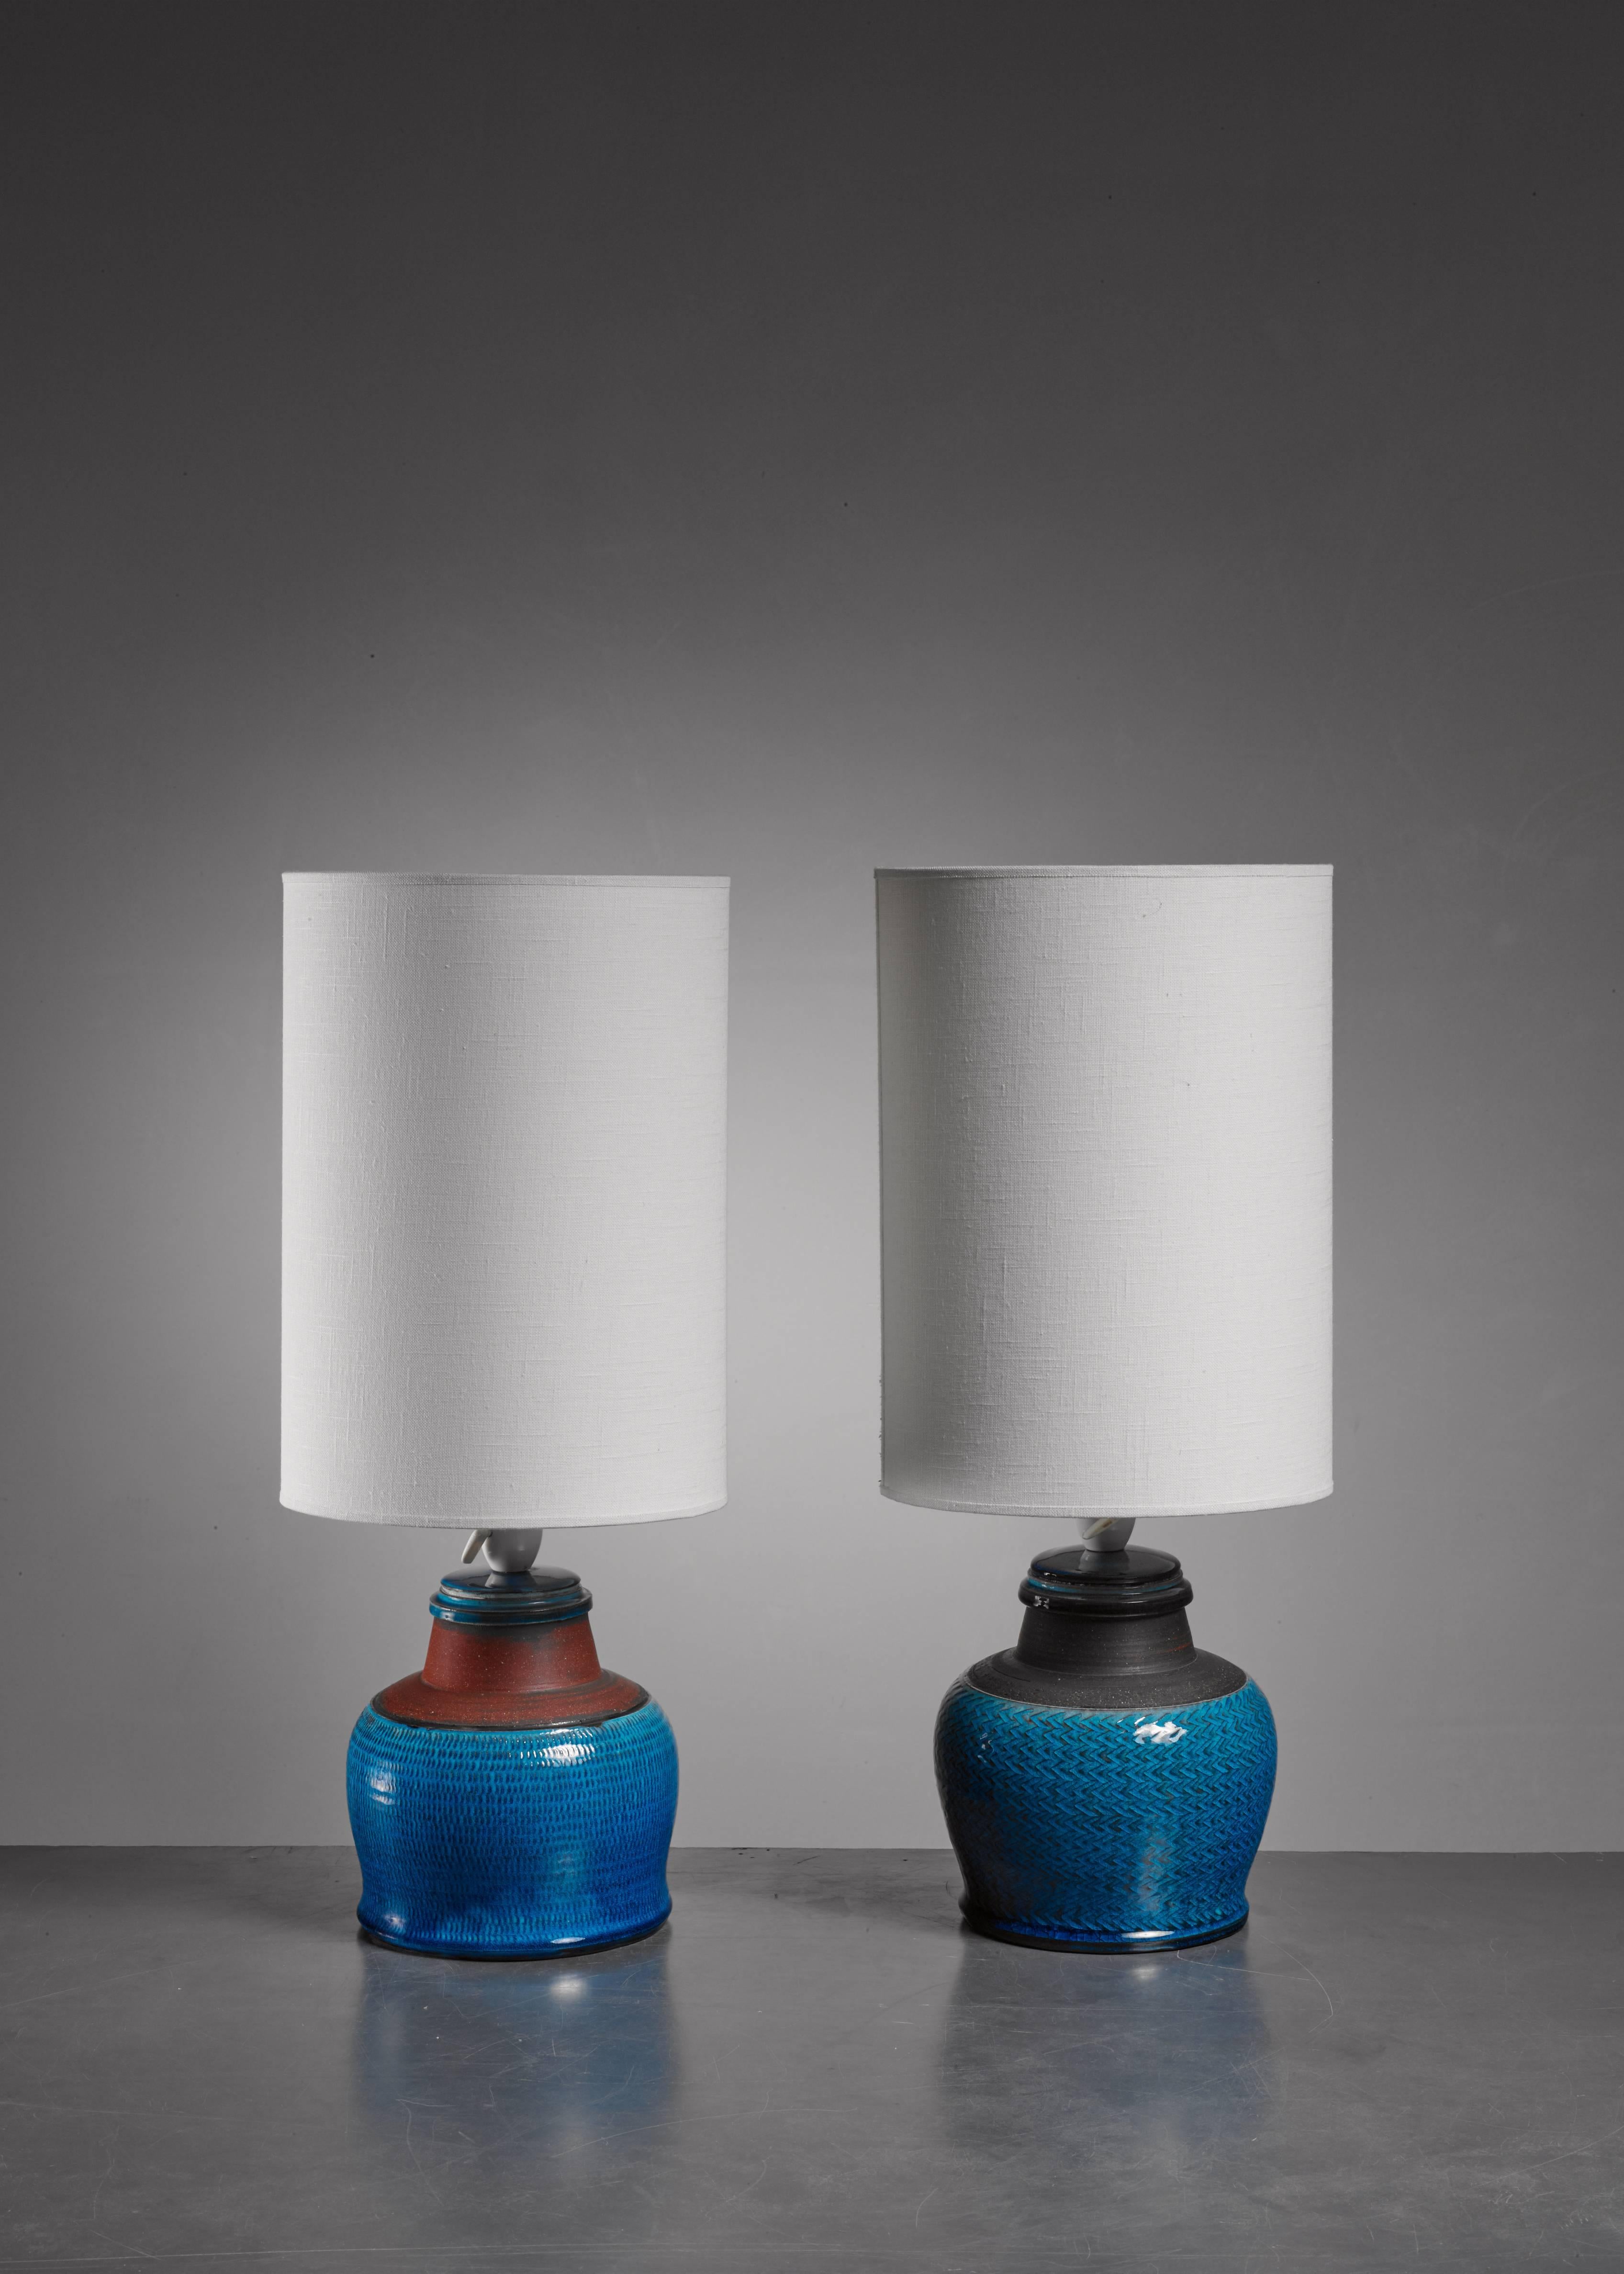 Ein Paar bauchige, blau-braune Keramik-Tischlampen von Kähler.

Die angegebenen Maße beziehen sich auf die Lampen ohne den Schirm. Die Lampen sind unten von Kahler signiert und in einem ausgezeichneten Zustand.

 